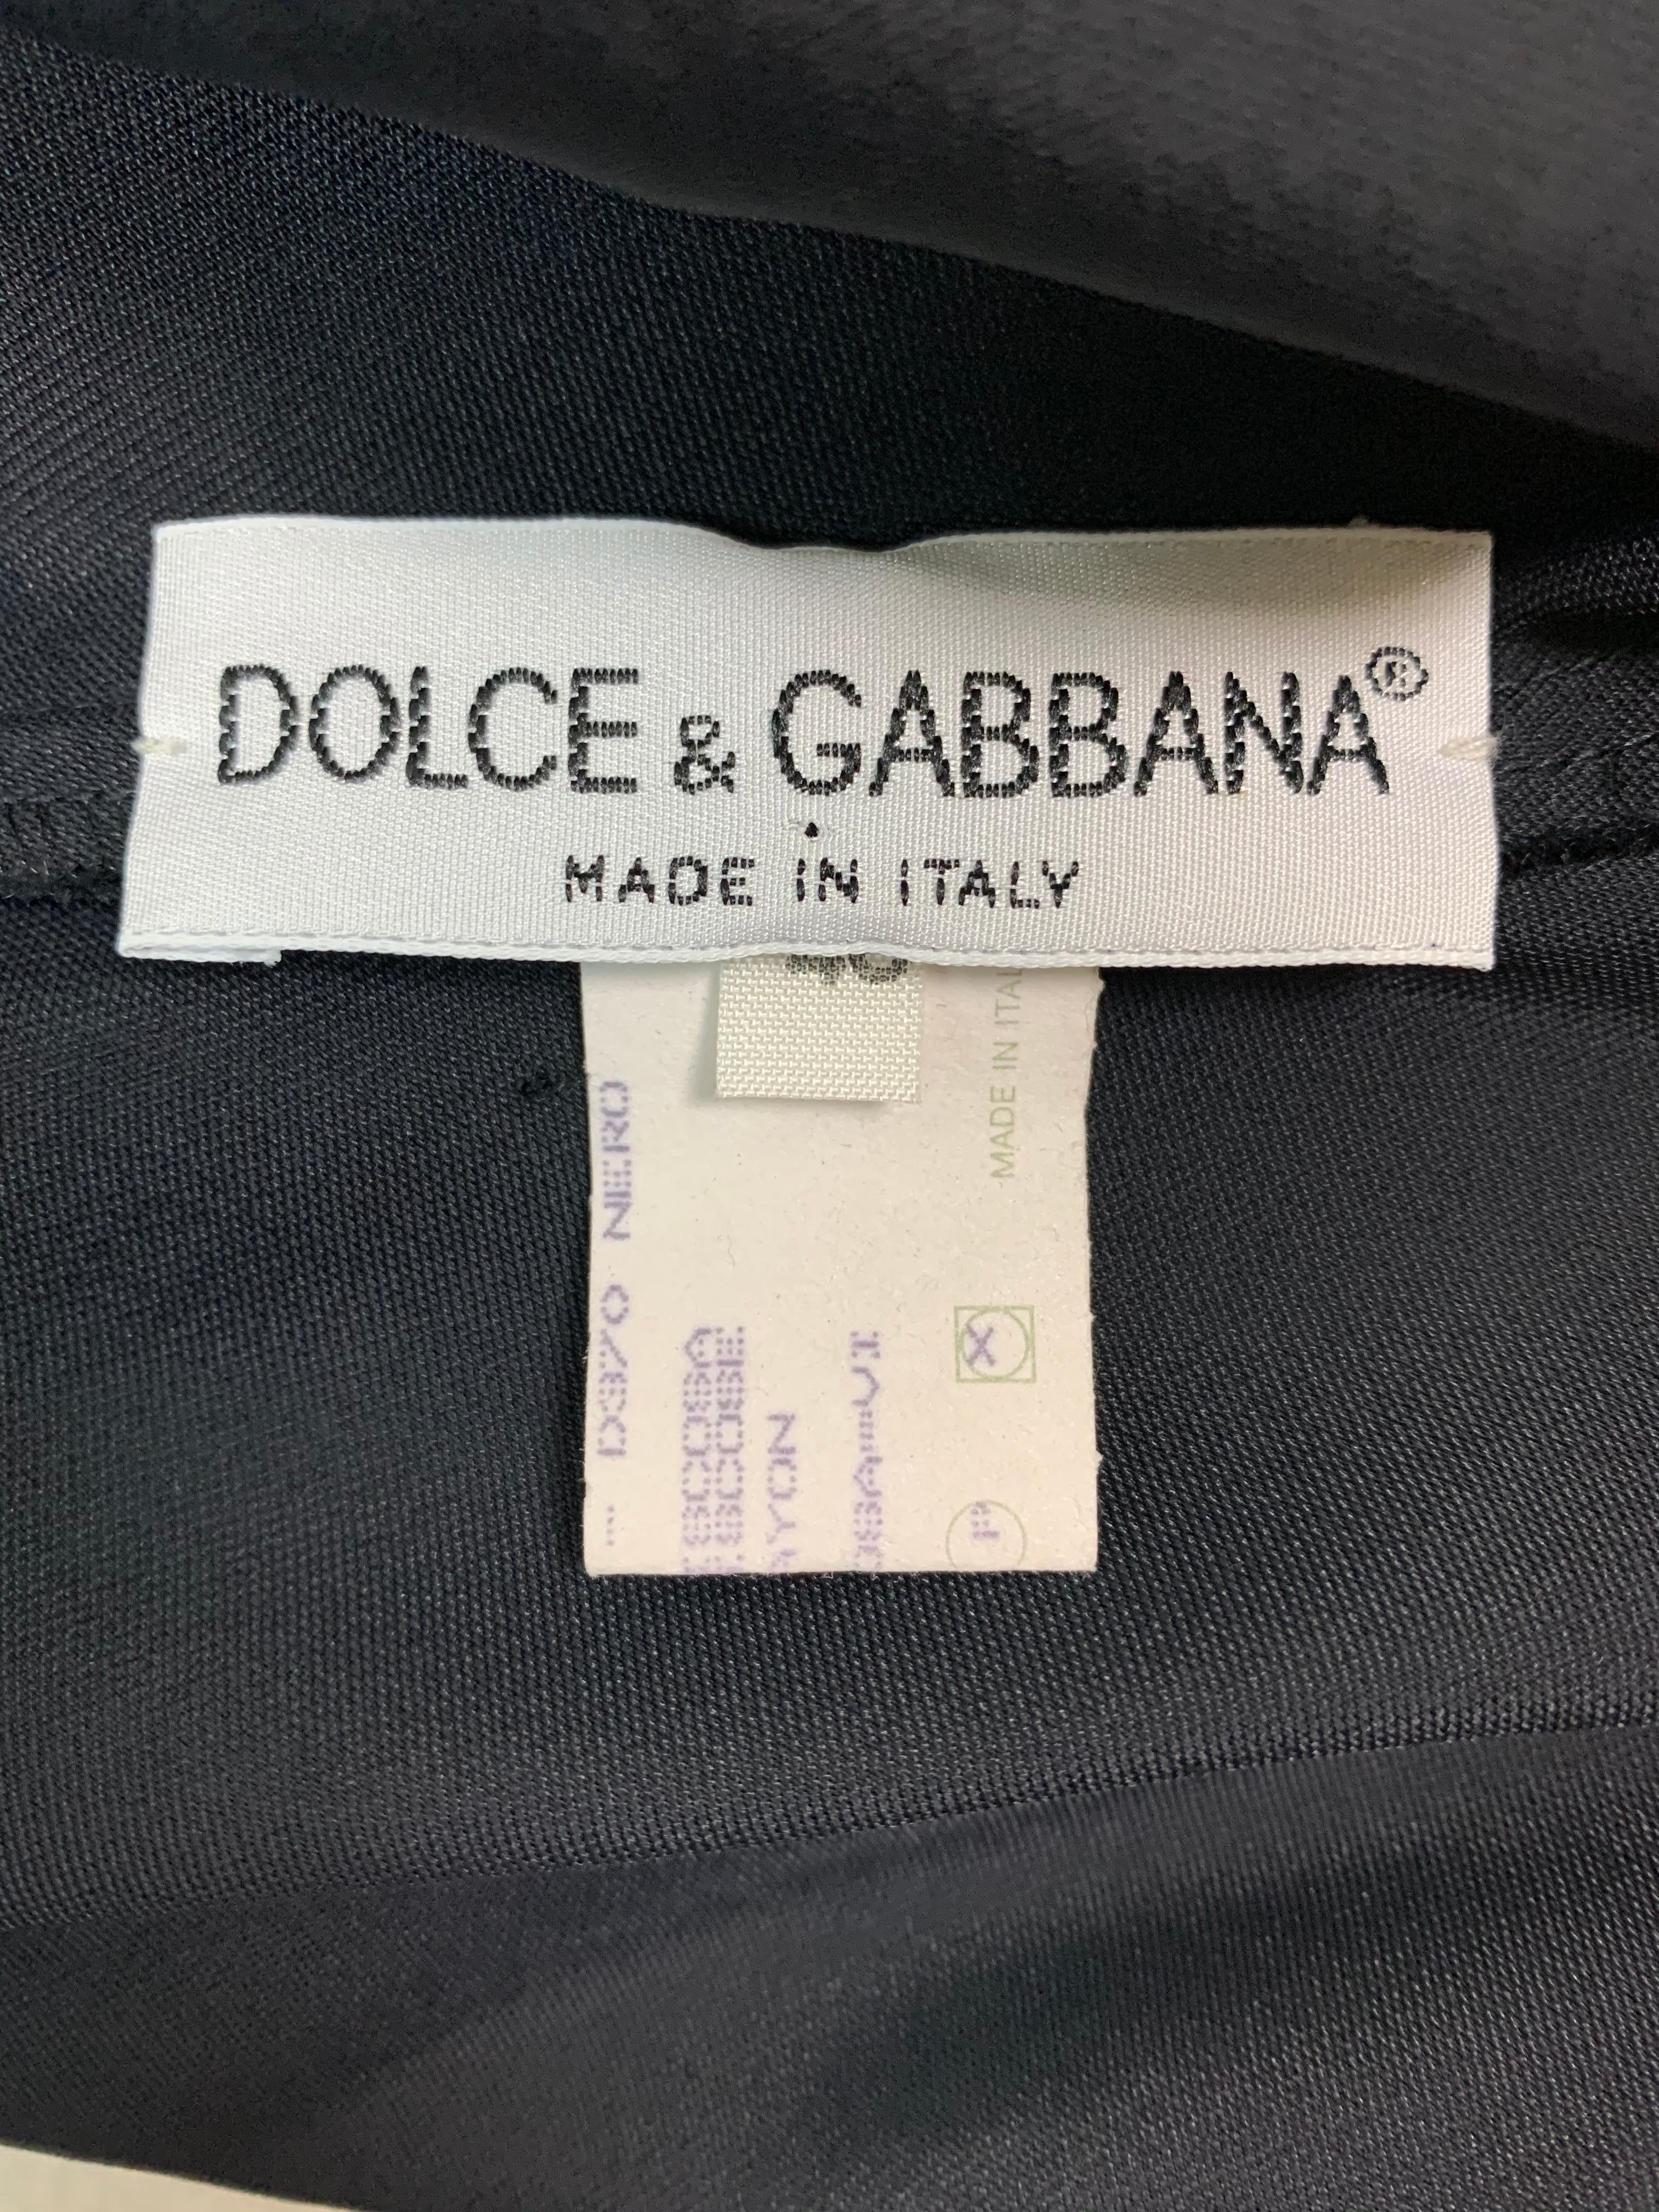 dolce and gabbana slip dress